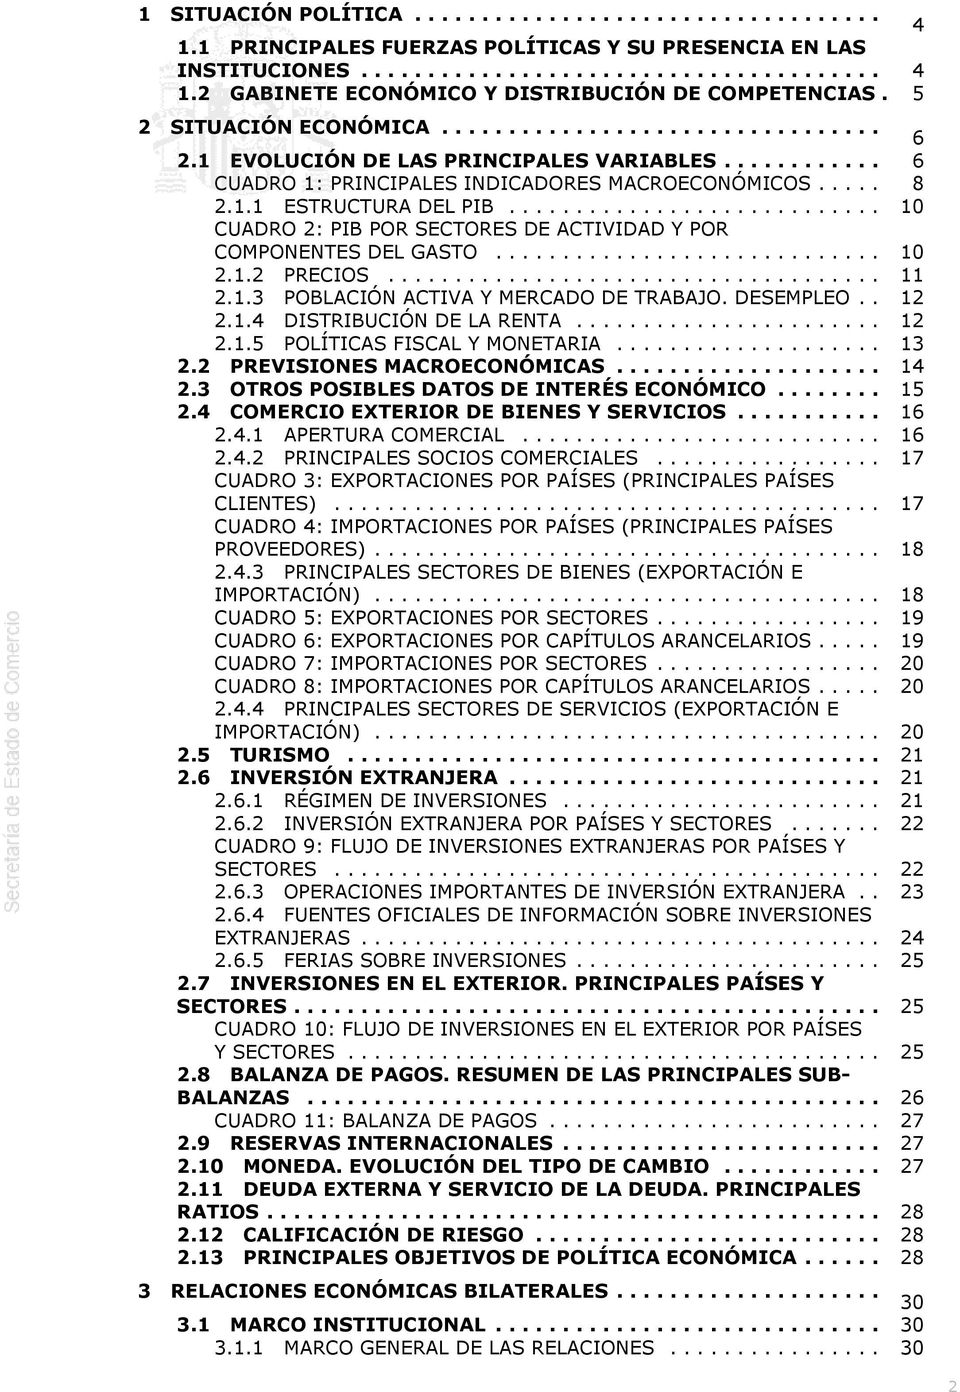 POBLACIÓN ACTIVA Y MERCADO DE TRABAJO DESEMPLEO 12 214 DISTRIBUCIÓN DE LA RENTA 12 215 POLÍTICAS FISCAL Y MONETARIA 13 22 PREVISIONES MACROECONÓMICAS 14 23 OTROS POSIBLES DATOS DE INTERÉS ECONÓMICO